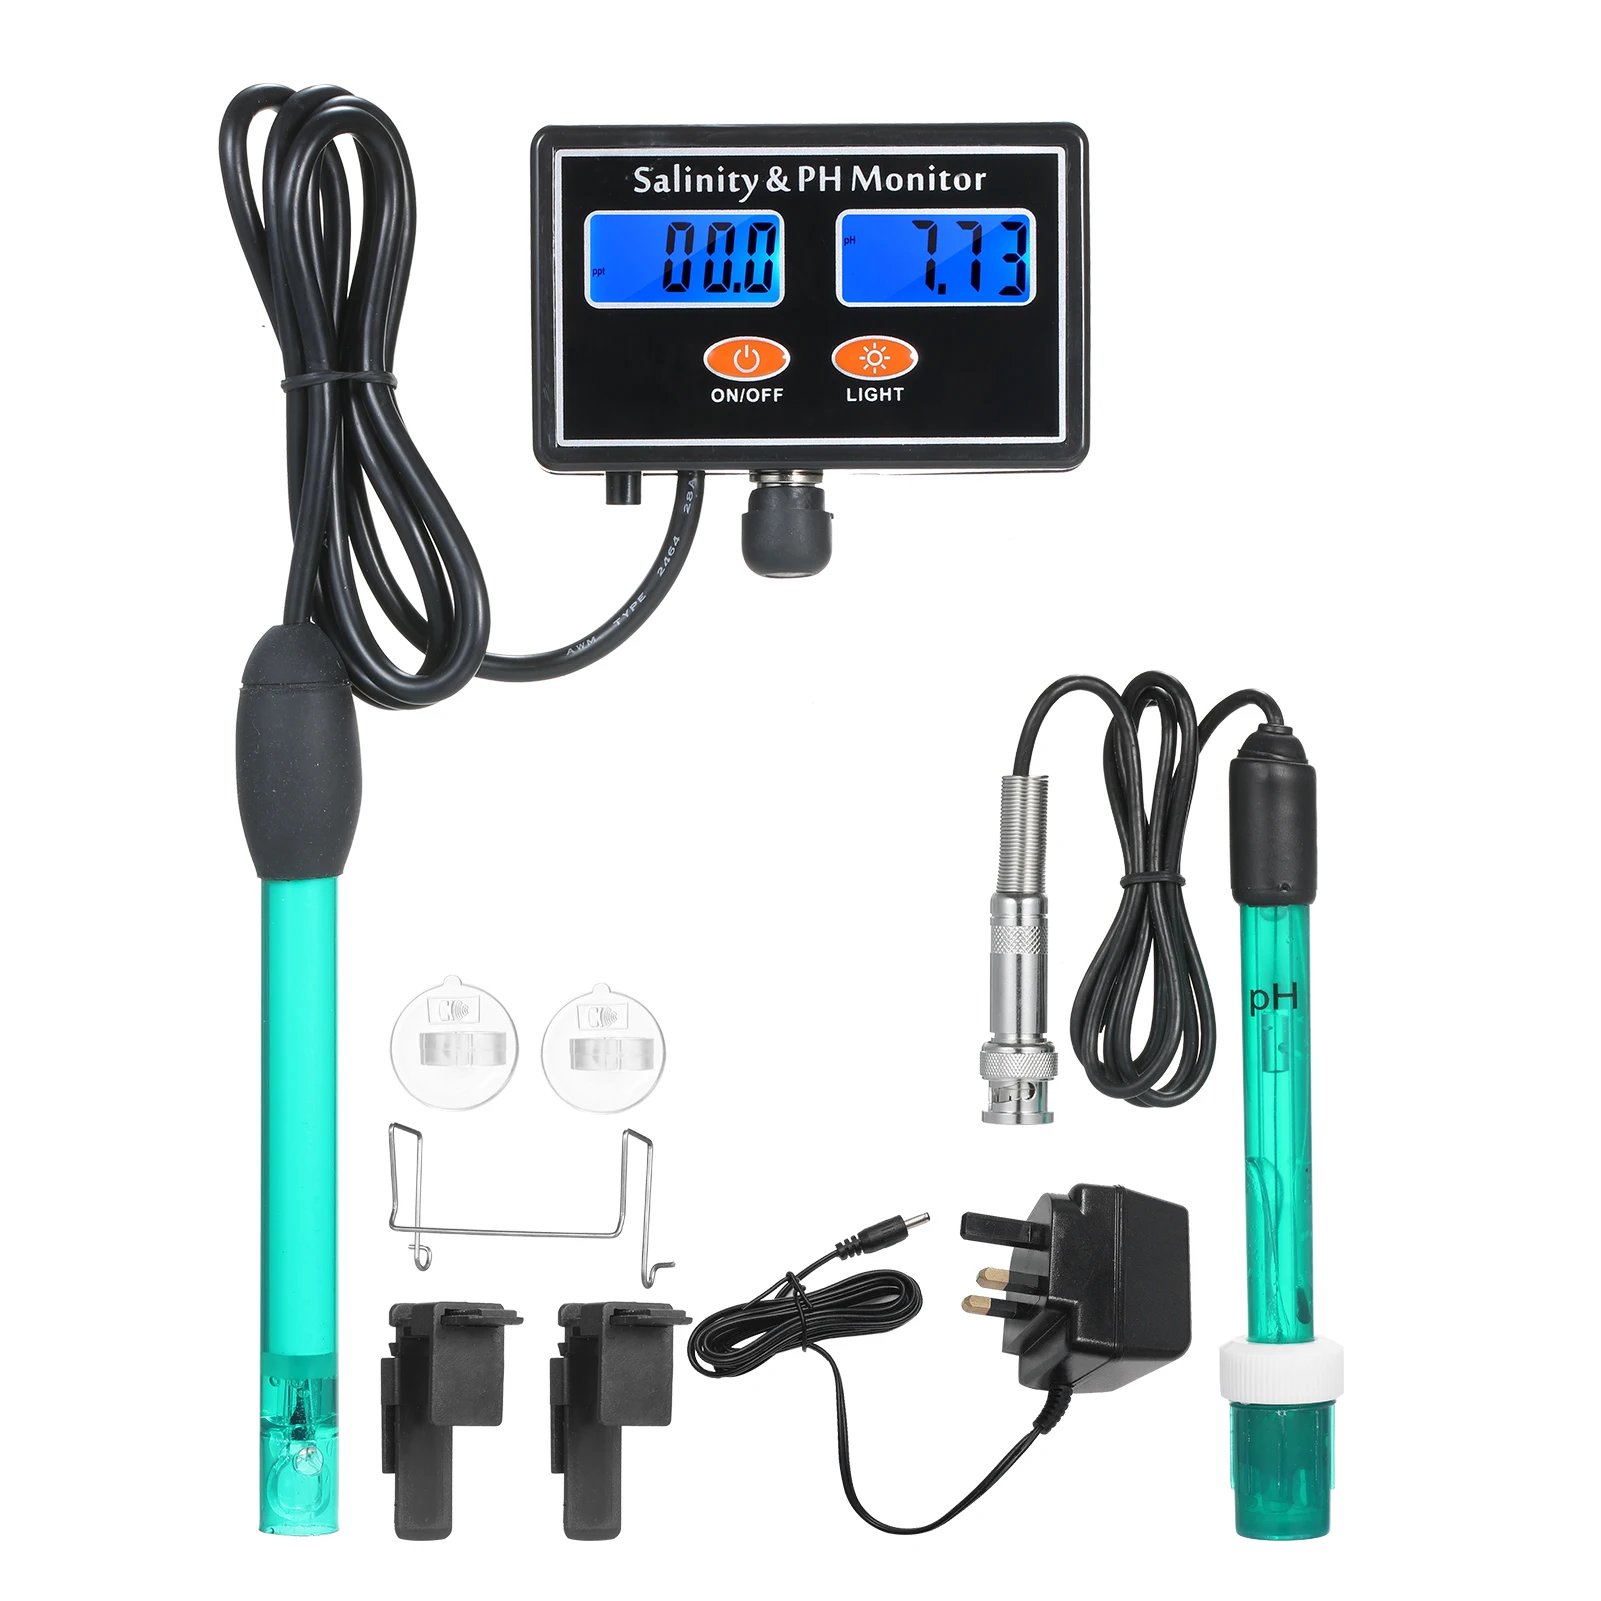 

Монитор качества воды и PH 2 в 1, измеритель pH и солености морской воды, тестер качества воды